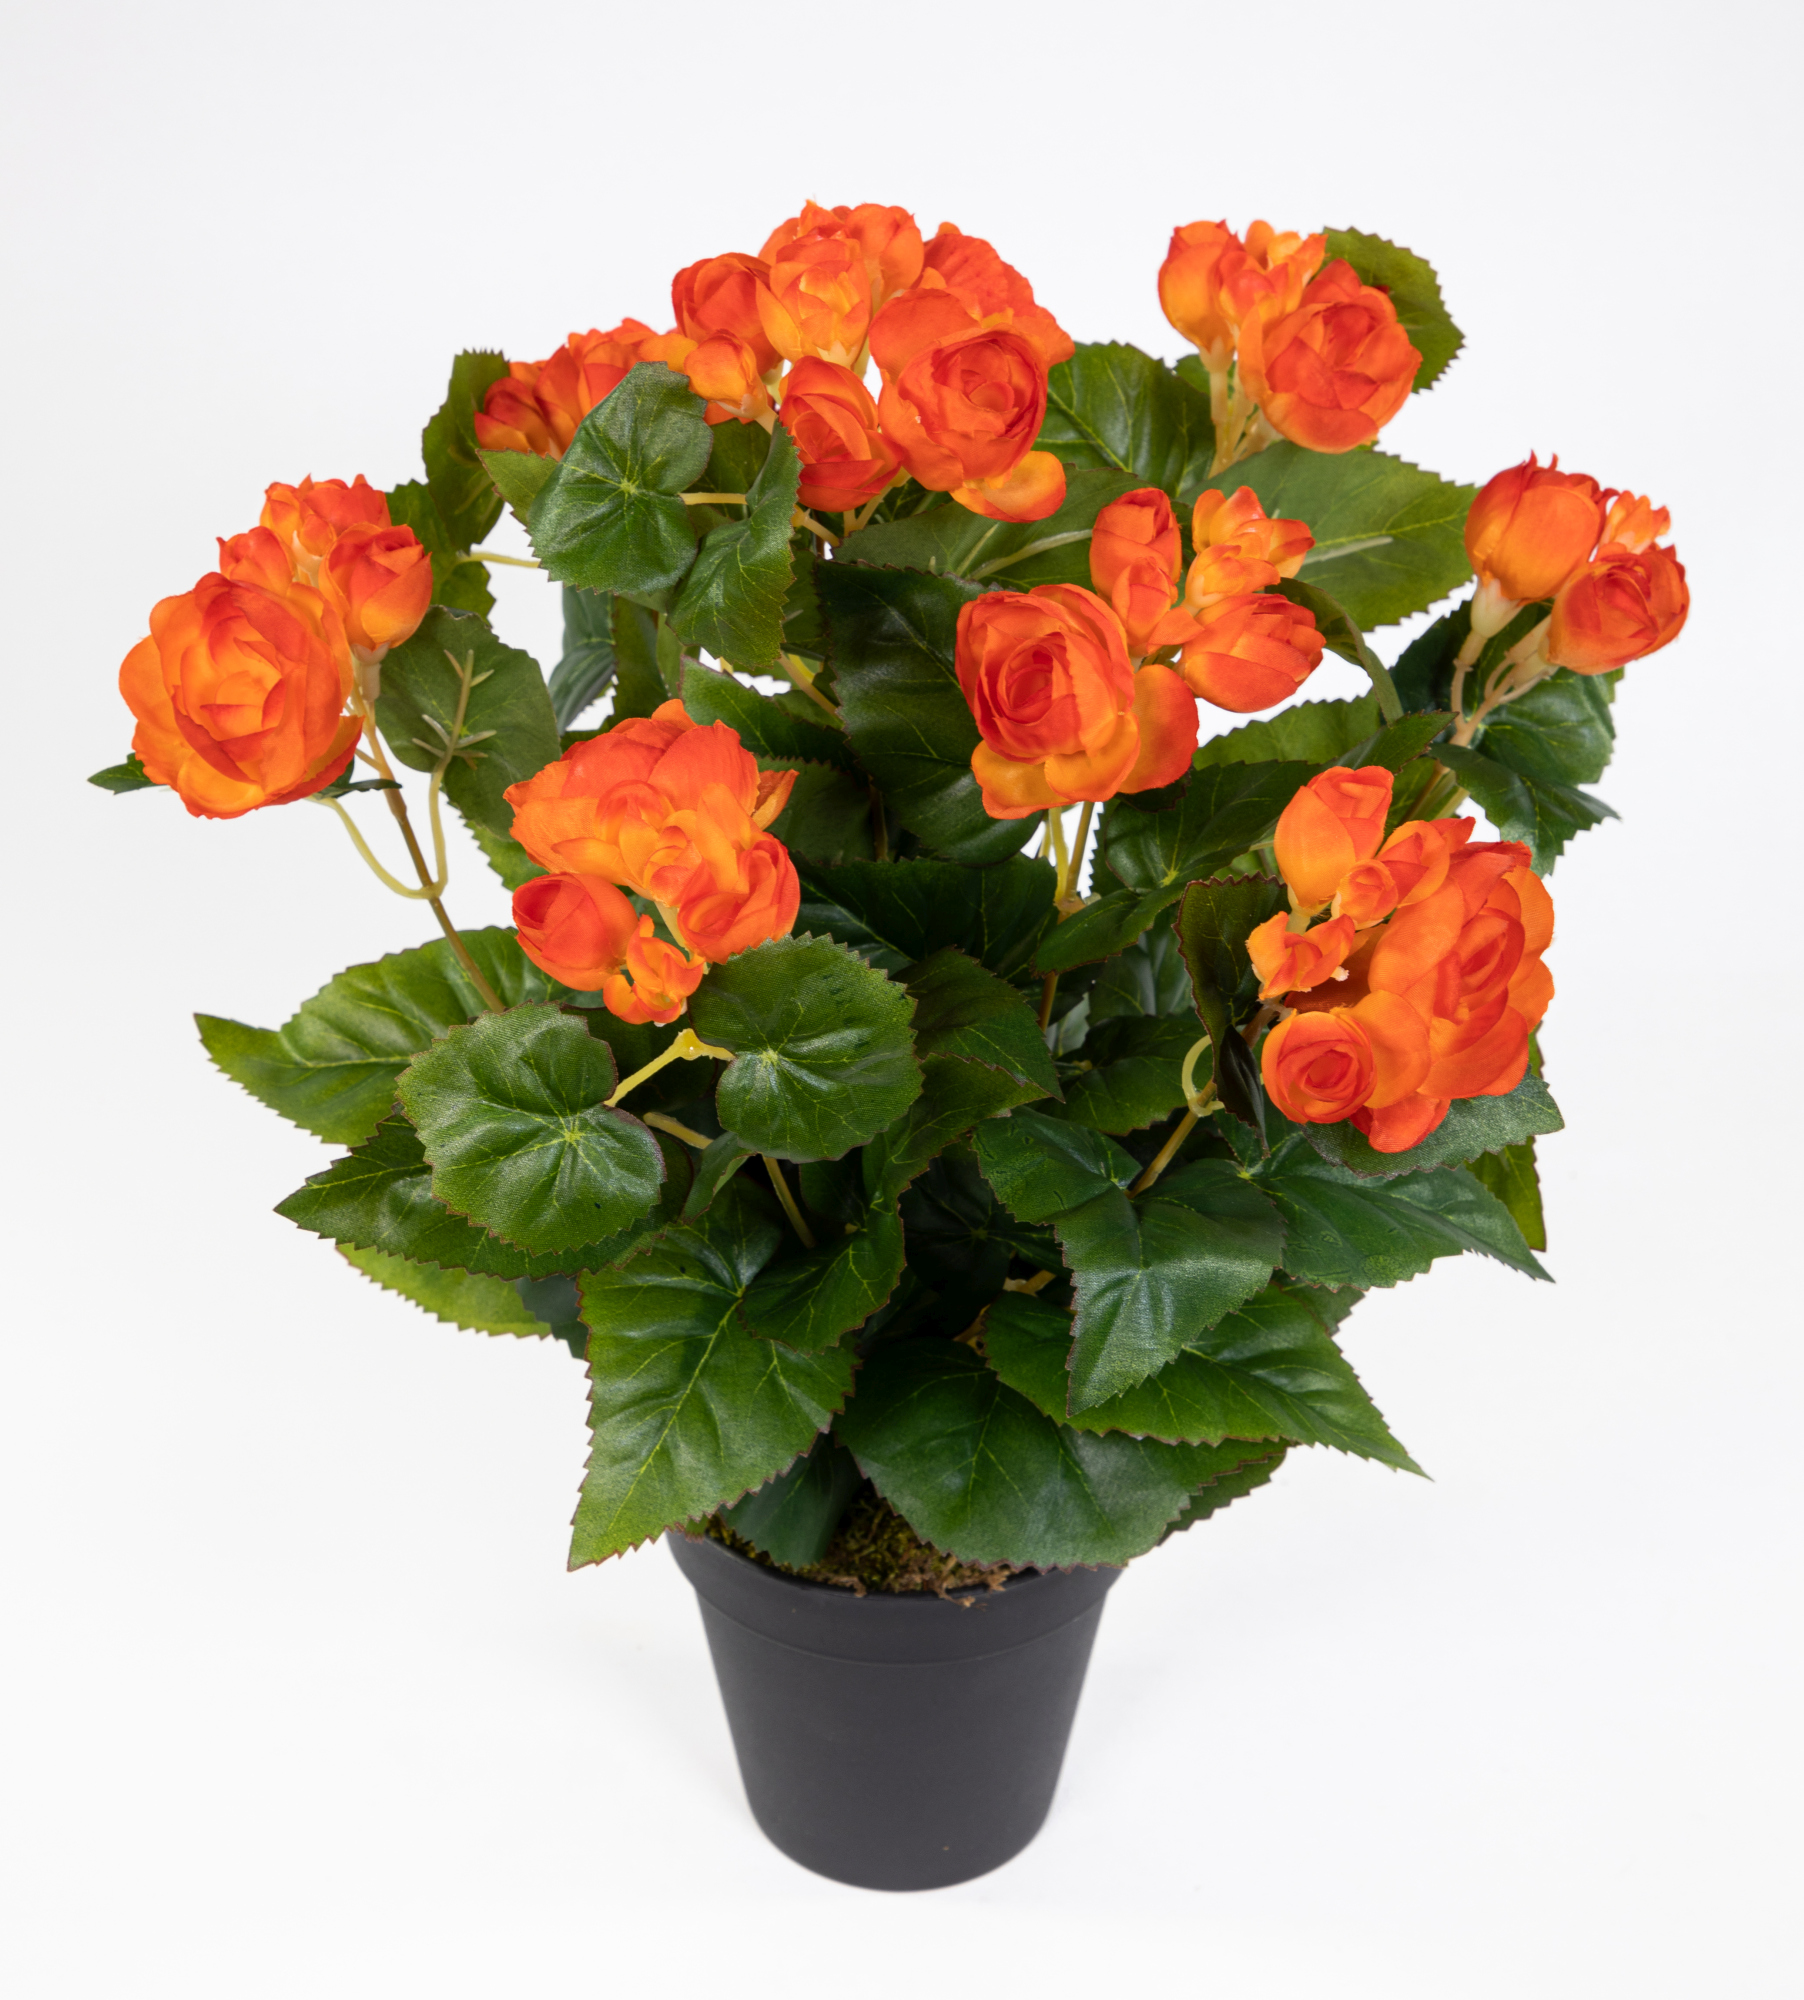 Begonie 38cm orange im Topf LM Kunstpflanzen künstlicher Begonienbusch künstliche Pflanze Kunstblume